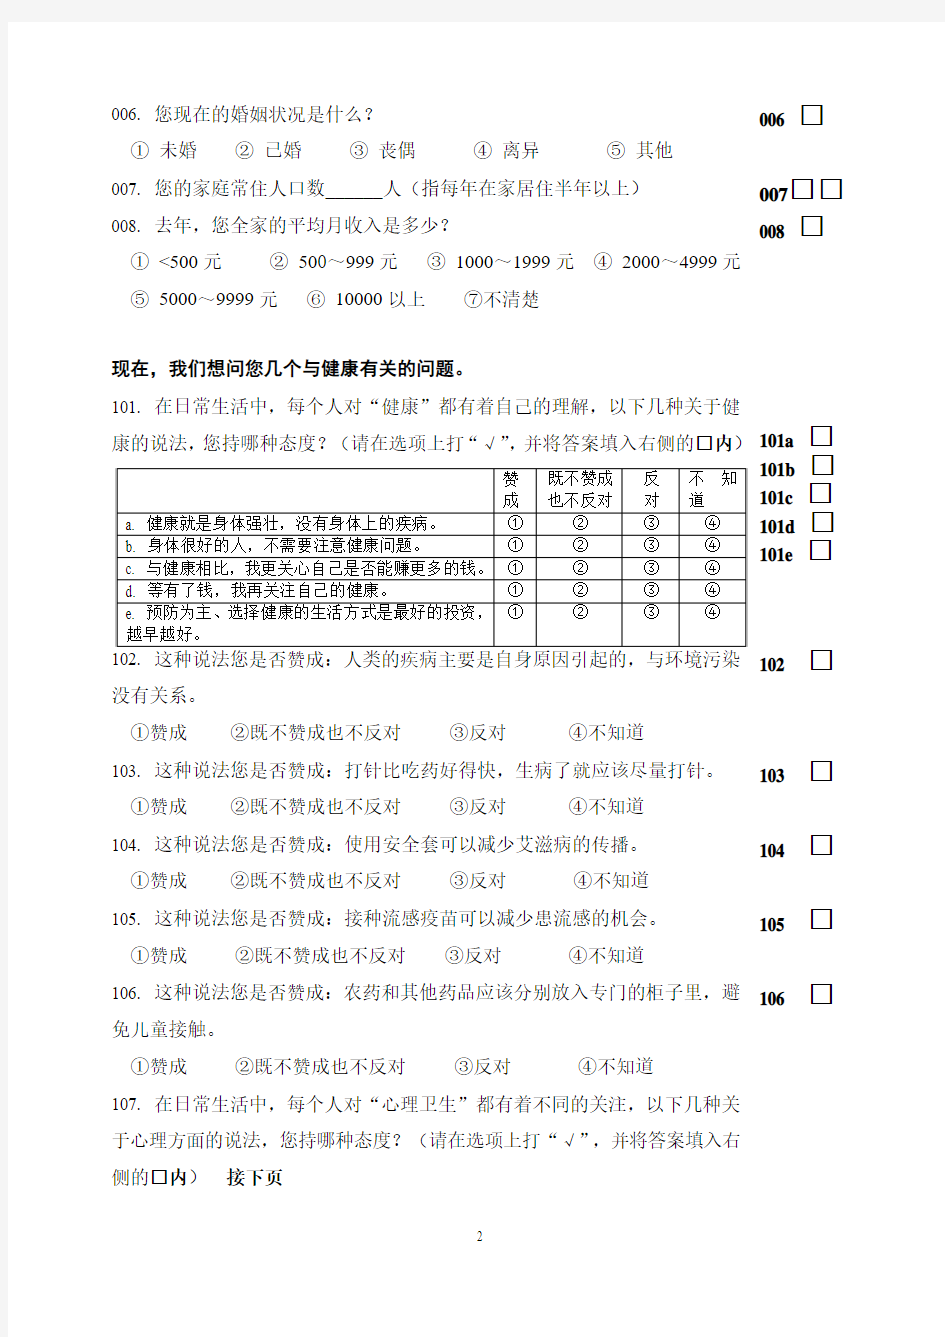 2008中国公民健康素养调查问卷